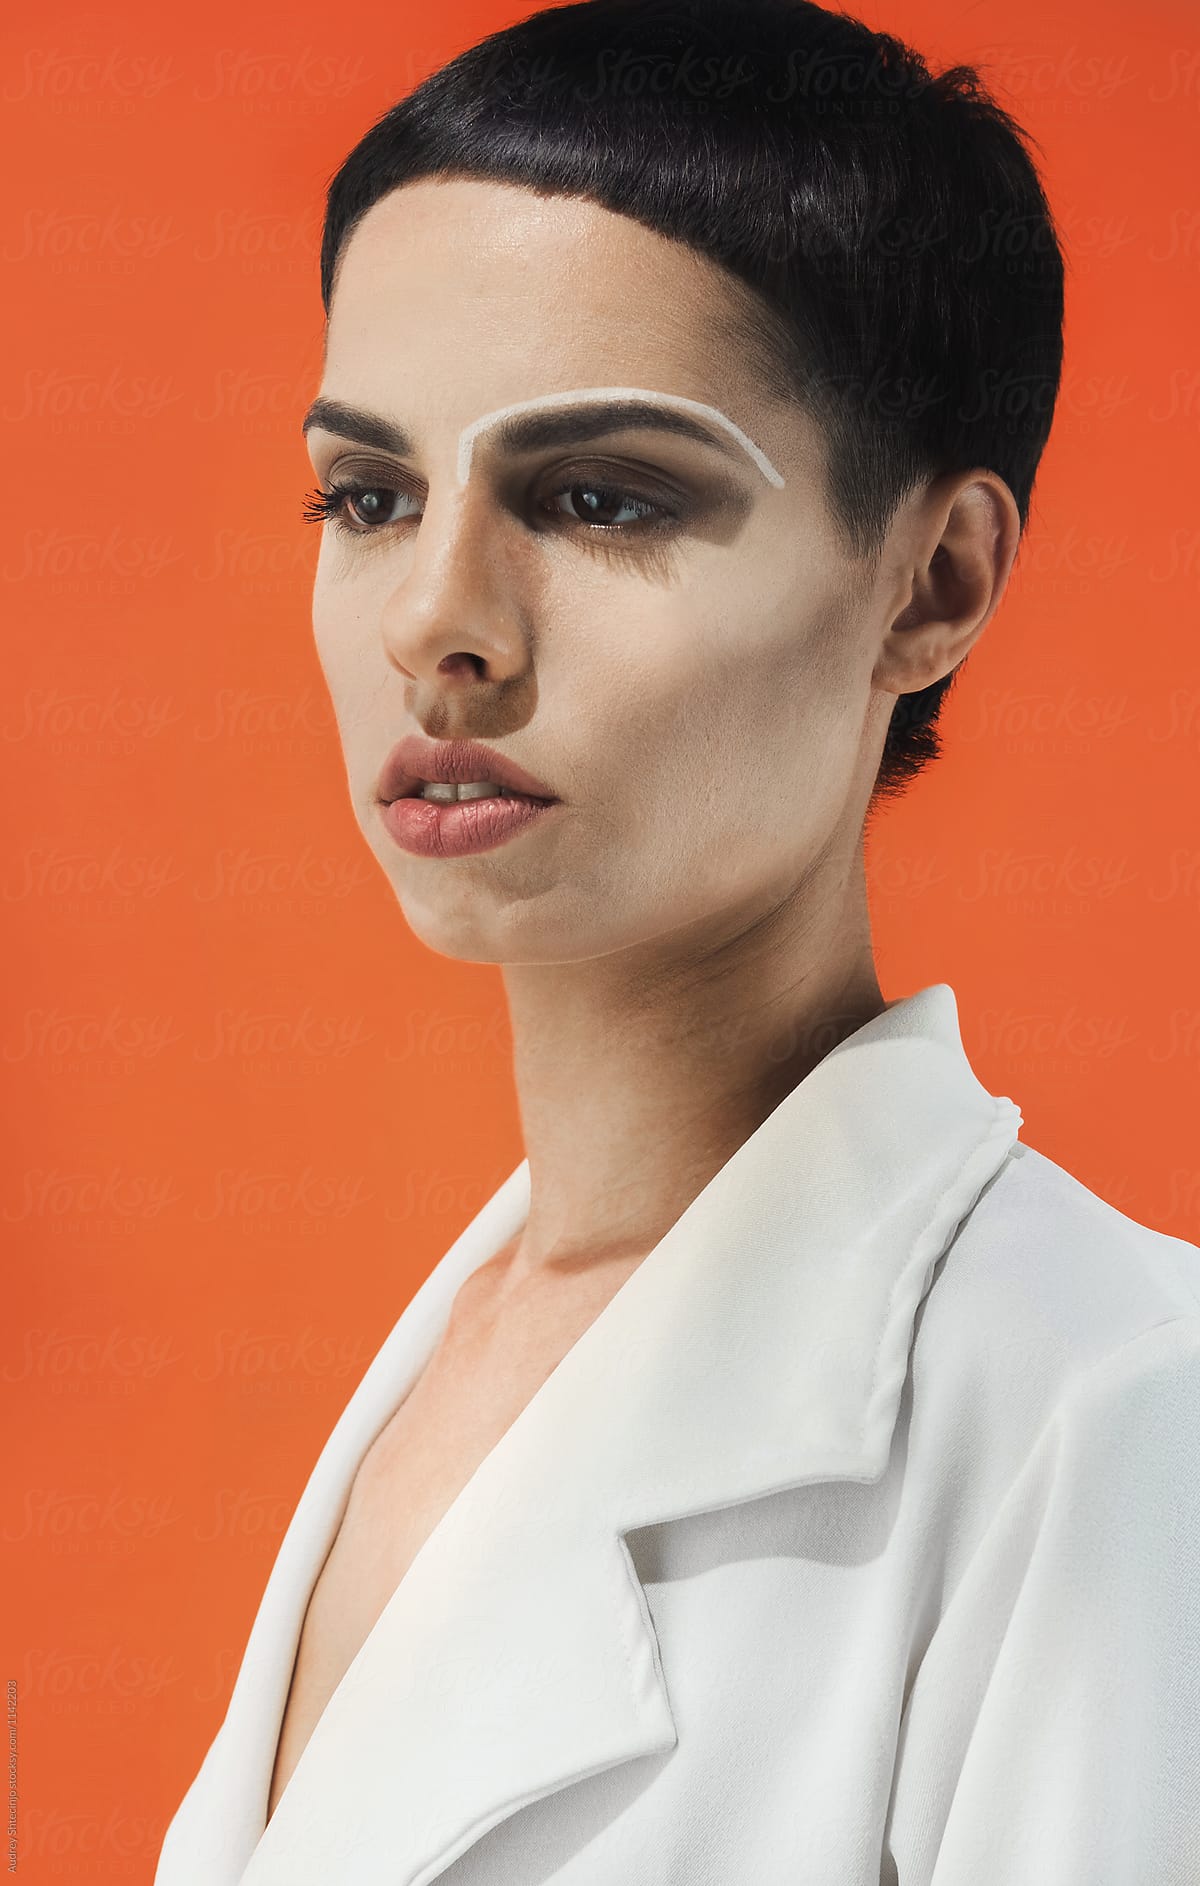 Fashion/conceptual portrait of female in white on orange background.